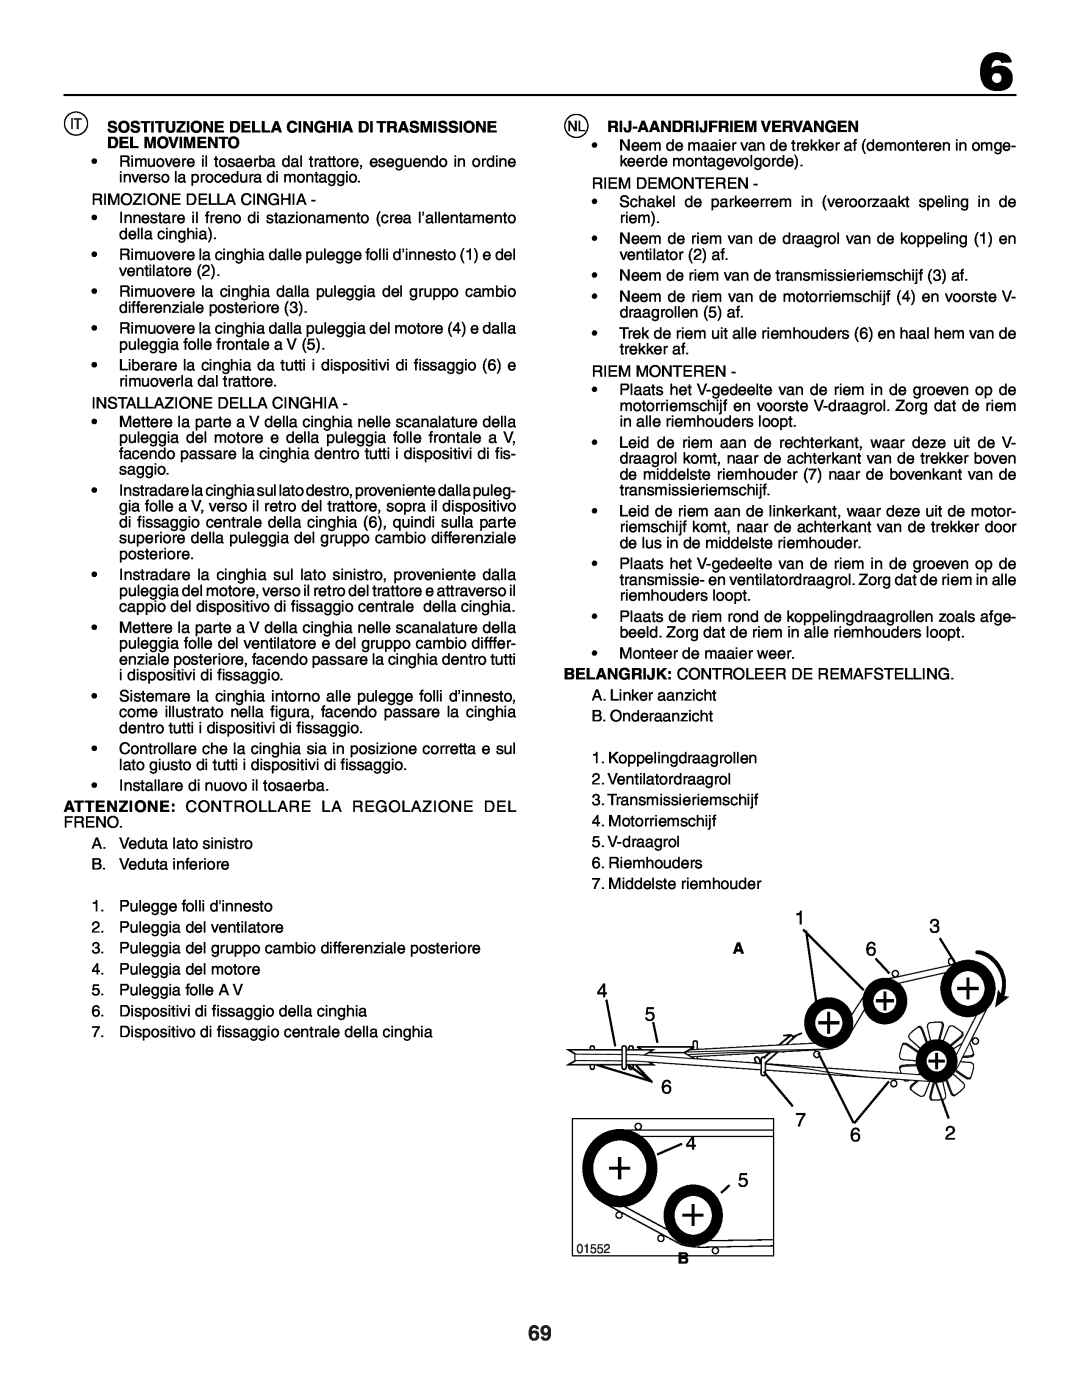 Husqvarna GTH250XP instruction manual Sostituzione Della Cinghia Di Trasmissione Del Movimento, Rij-Aandrijfriem Vervangen 